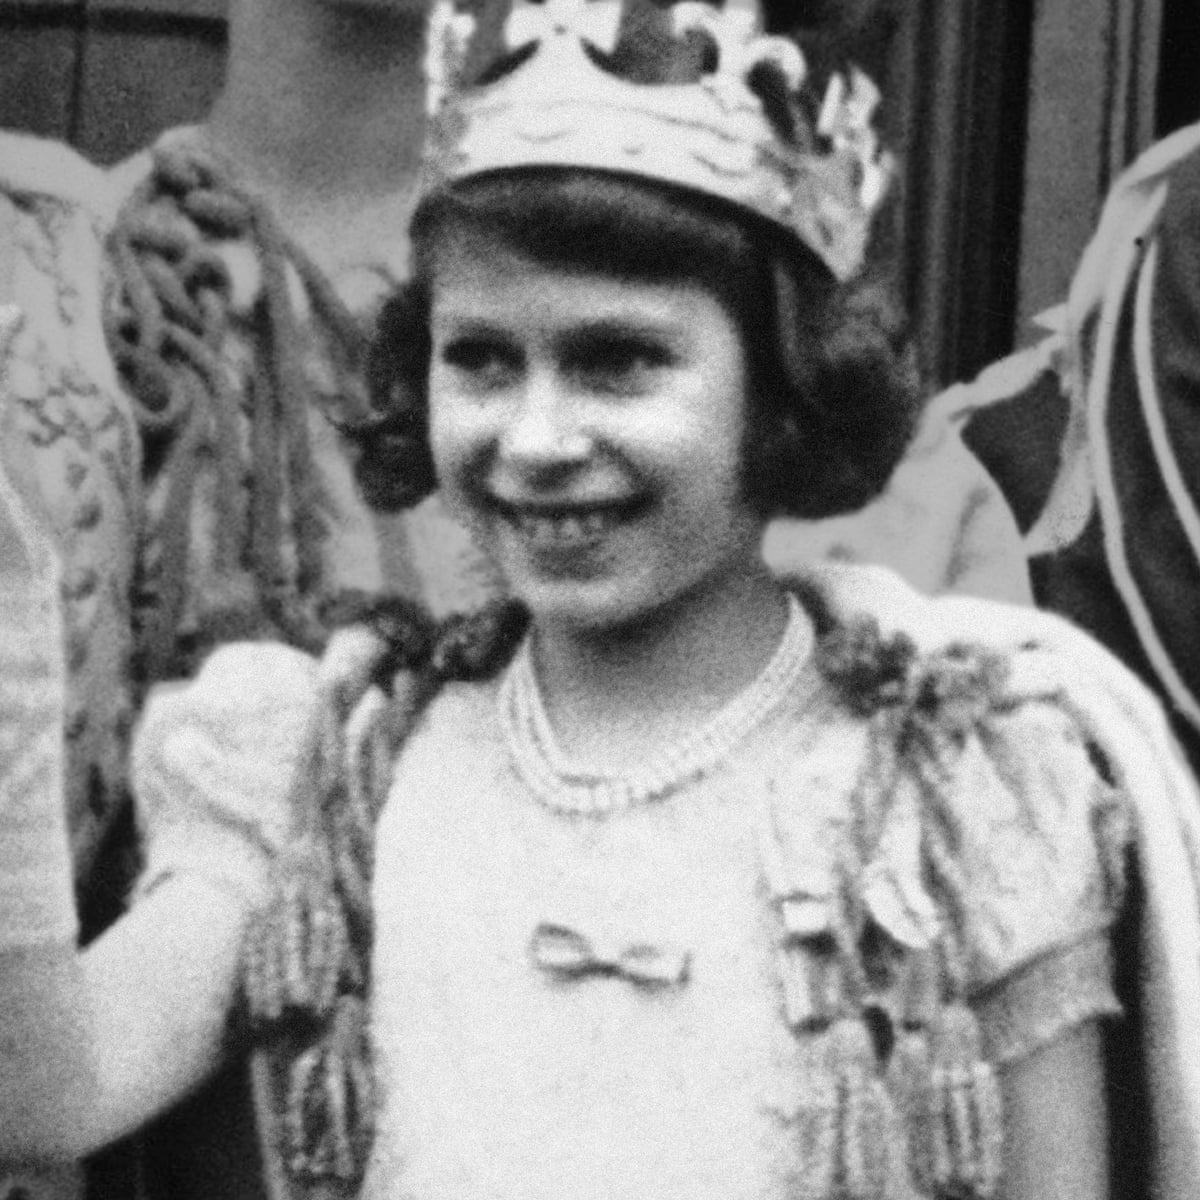 Queen Elizabeth II - A Life in Pictures